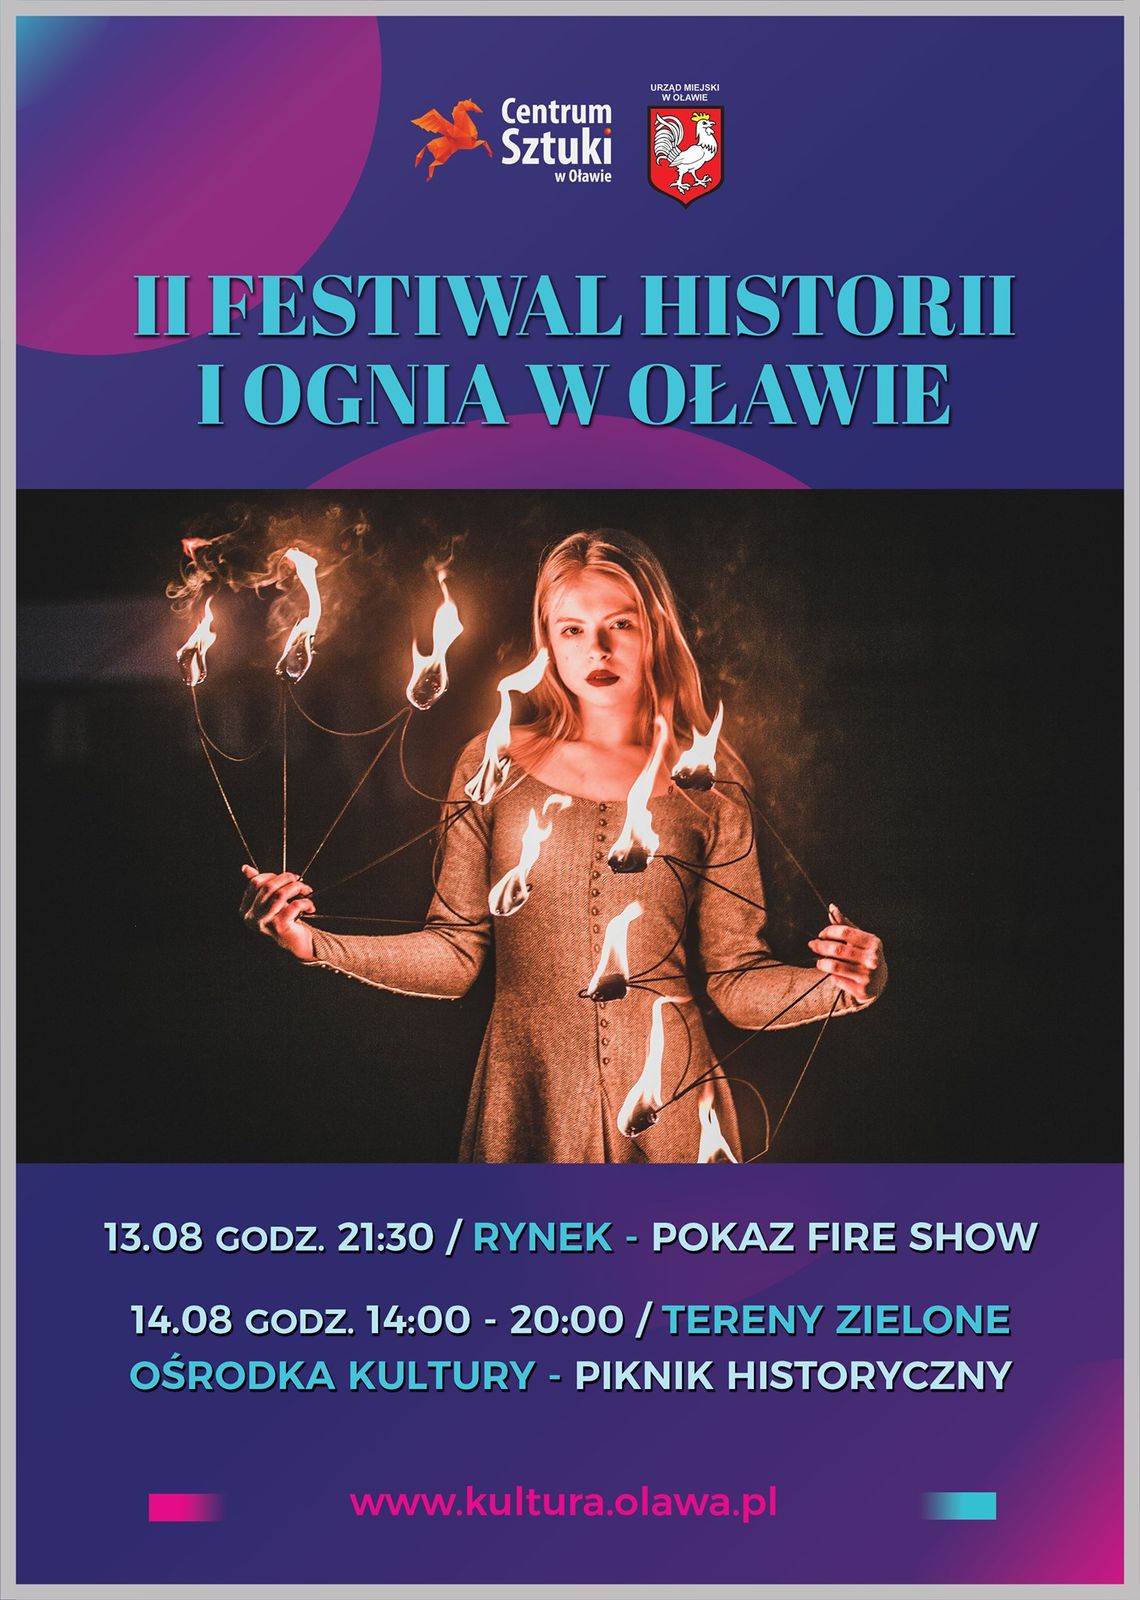 Średniowieczny festiwal. DZIŚ fire show!